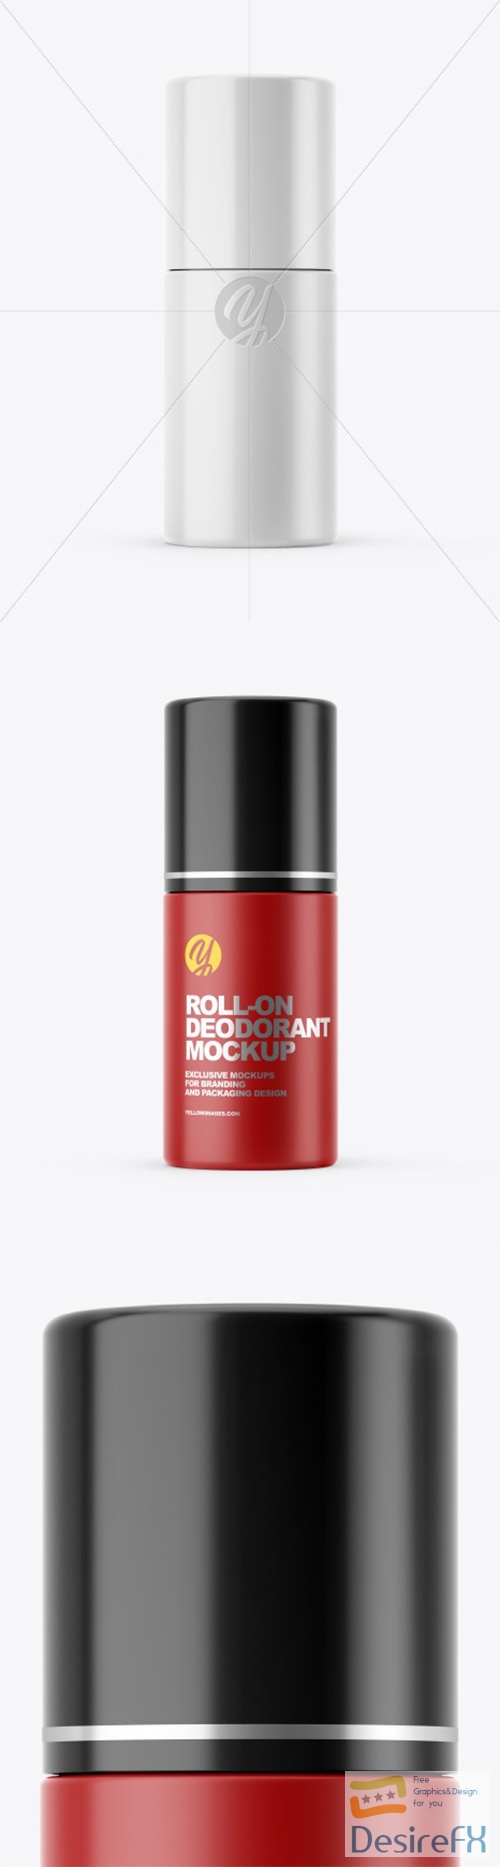 Closed Roll-on Deodorant Mockup 47961